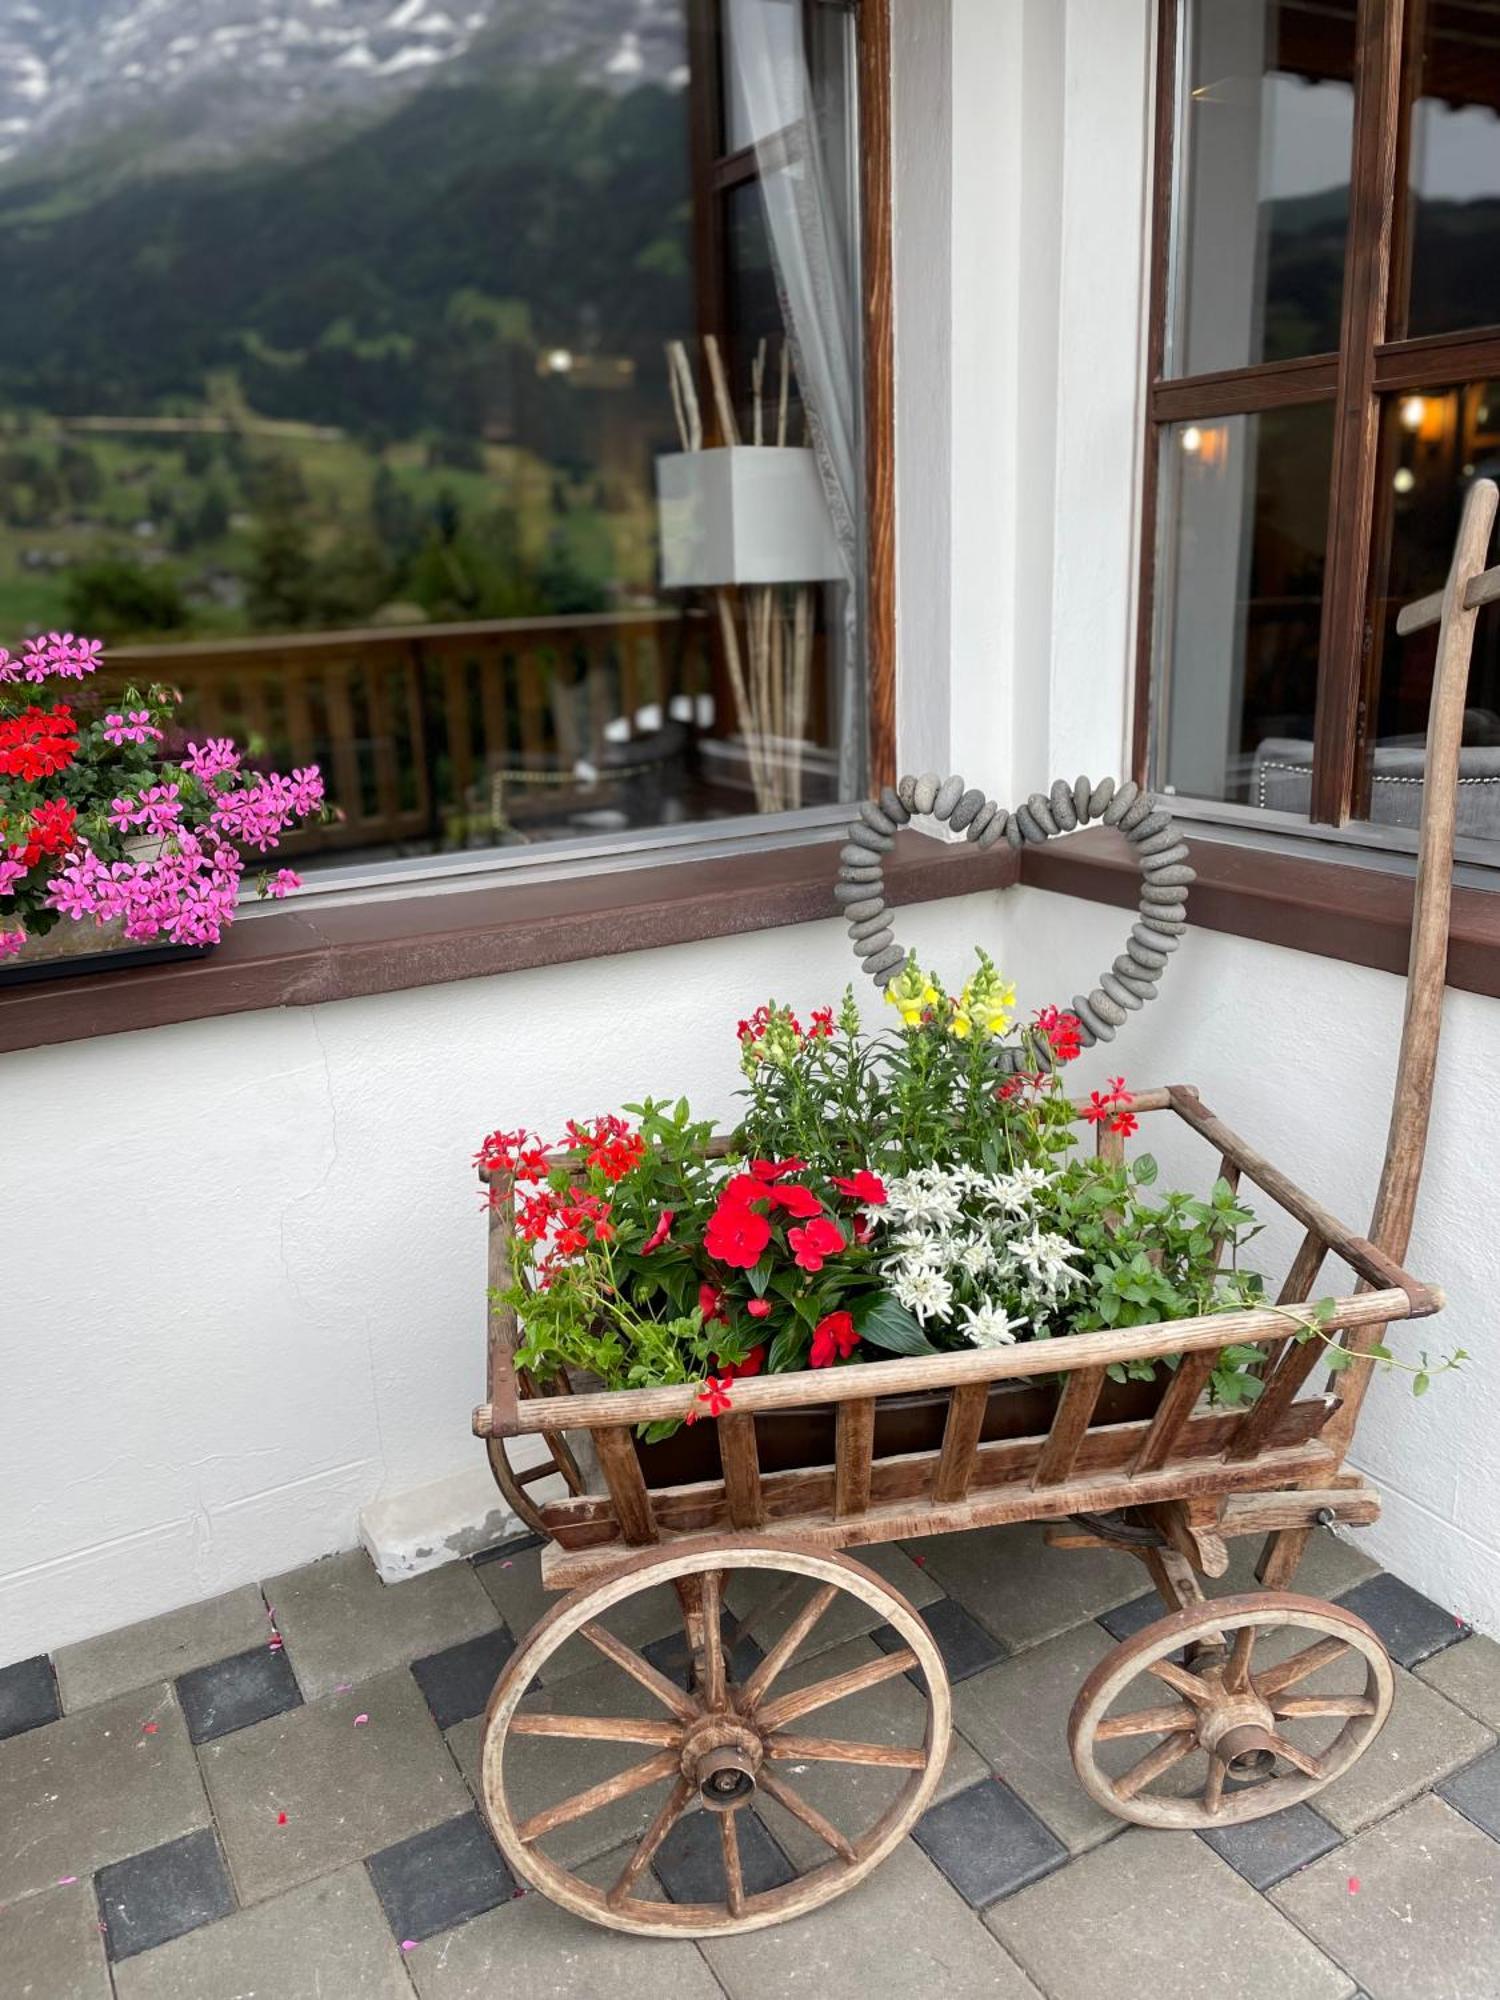 융프라우 로지, 스위스 마운틴 호텔 그린델발트 외부 사진